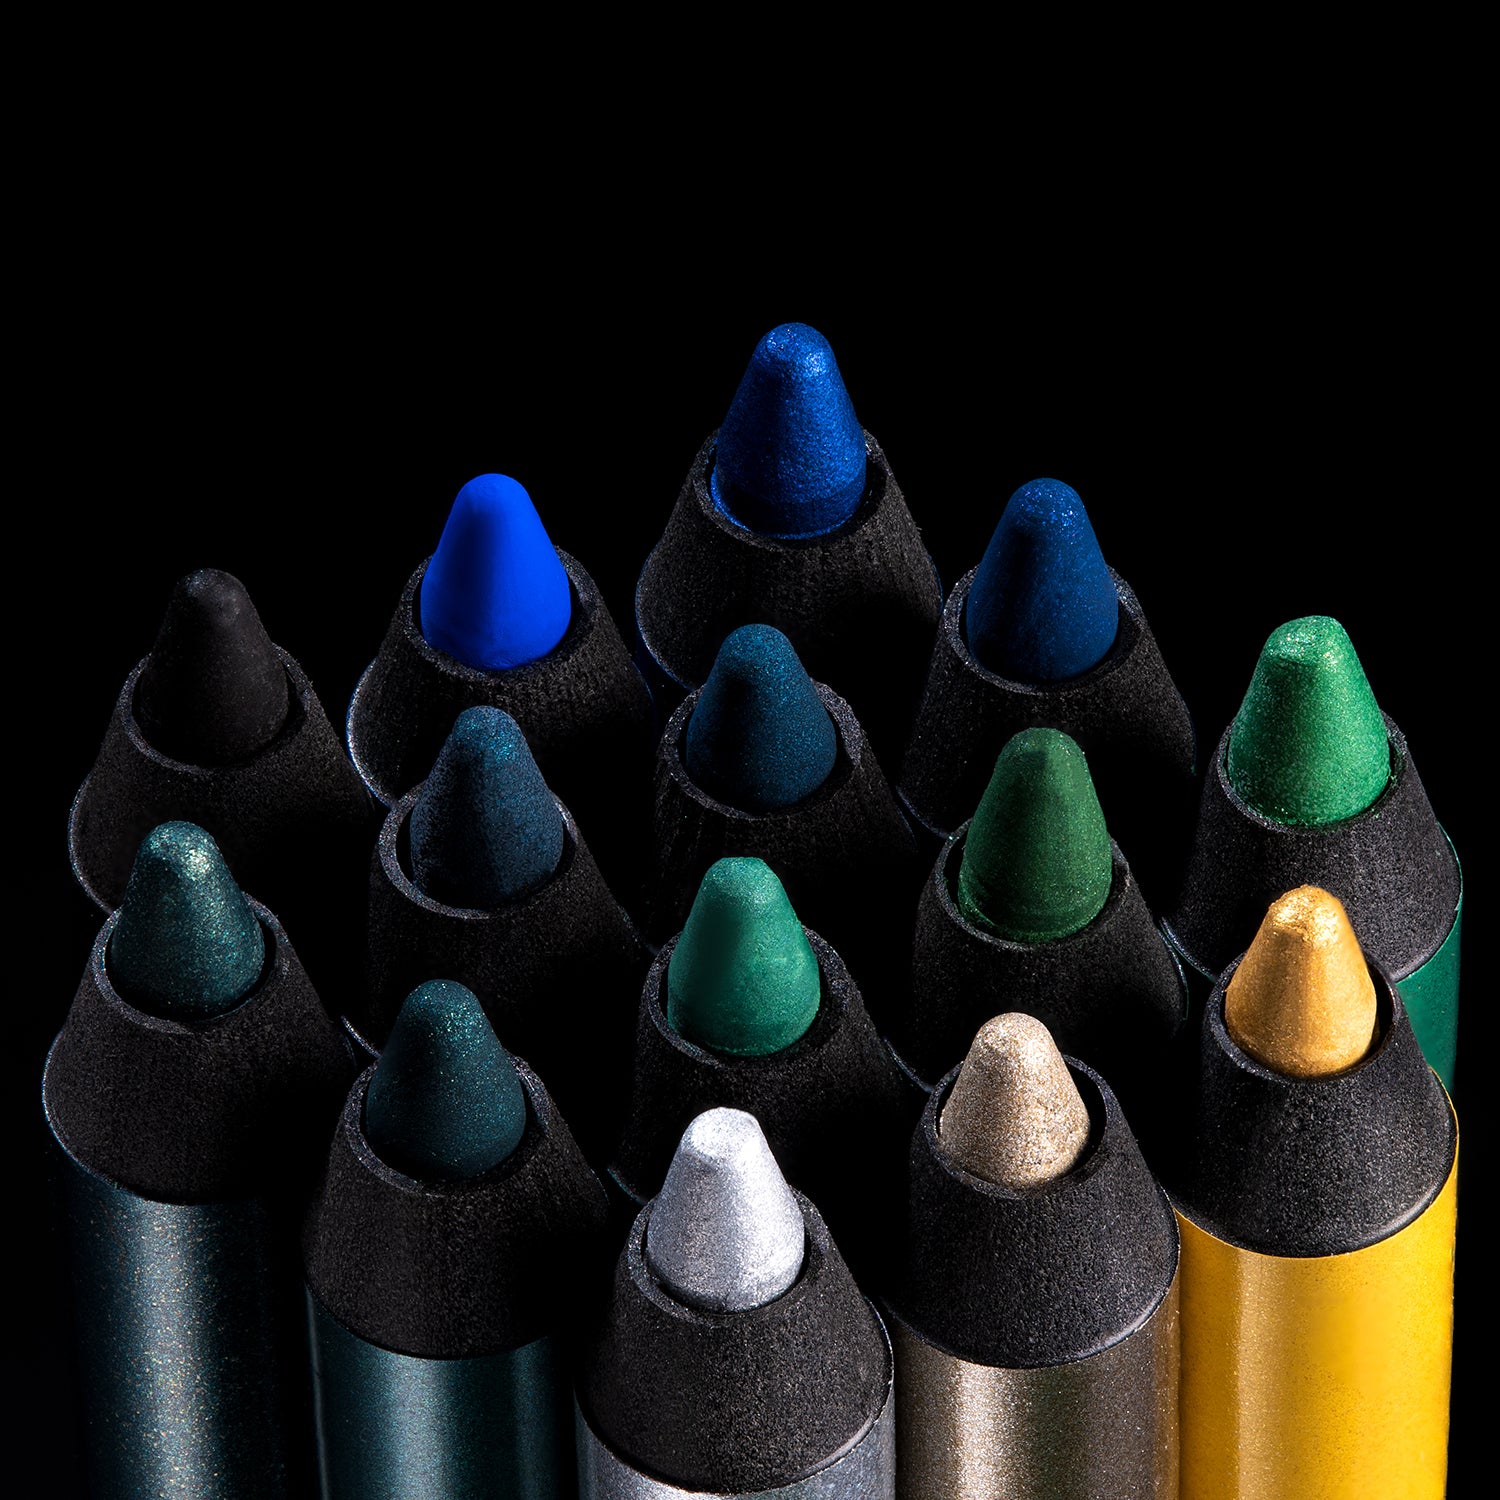 PAC Cosmetics Stay4Ever Gel Eye Pencil (1.6 gm) #Color_Ocean Mermaid